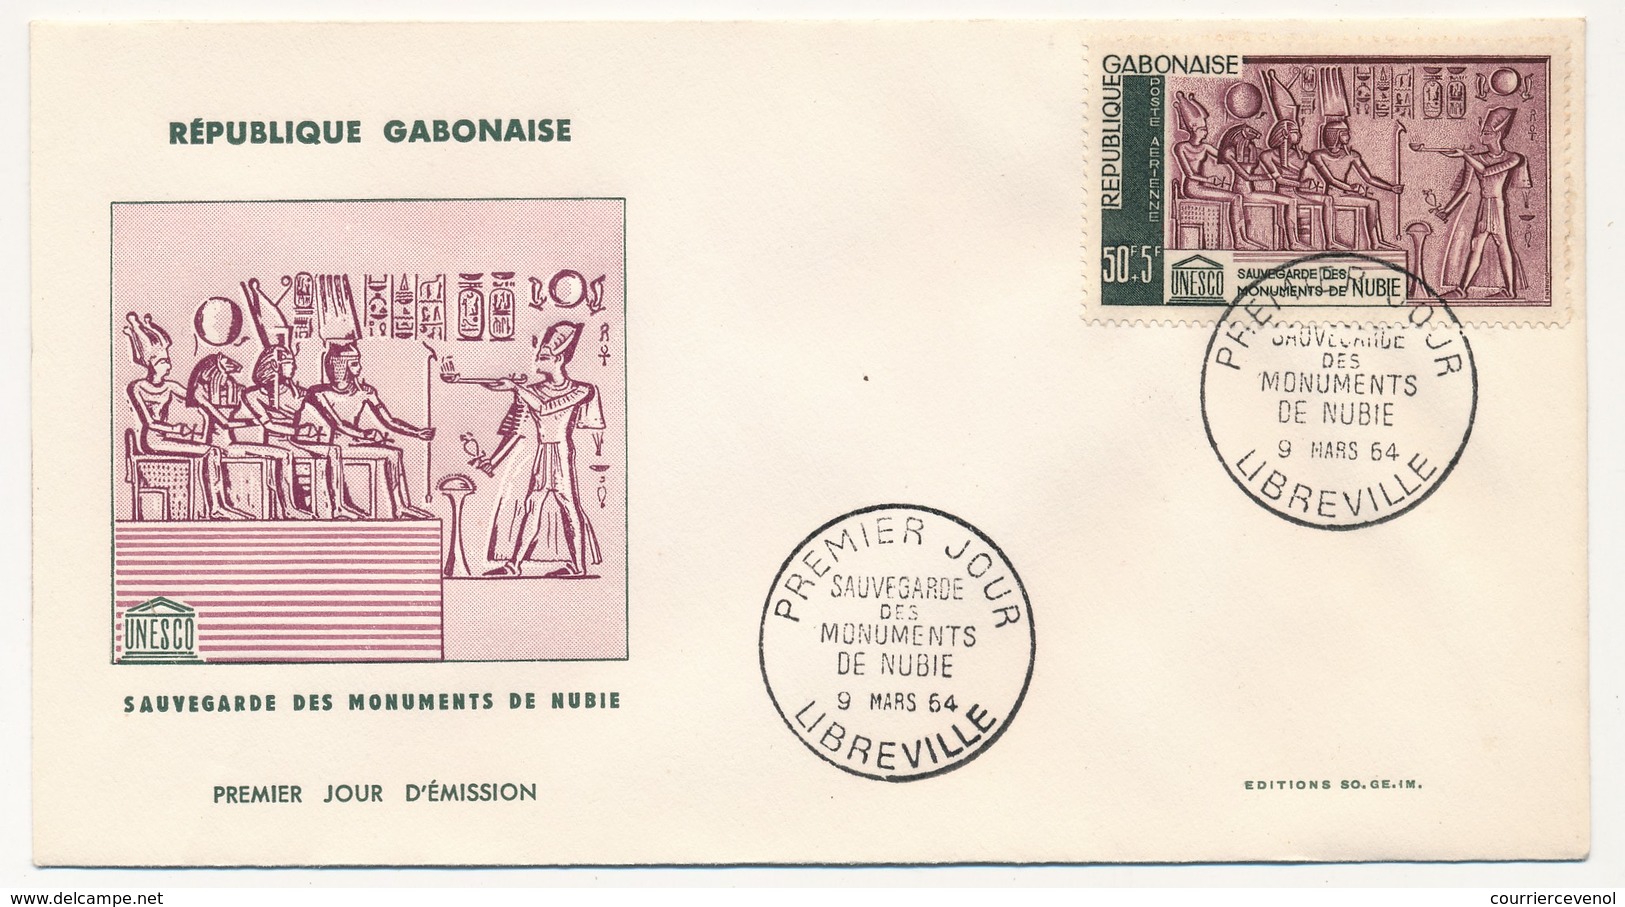 GABON => 2 FDC - Sauvegarde Des Monuments De Nubie - 9 Mars 1964 - Libreville - Gabon